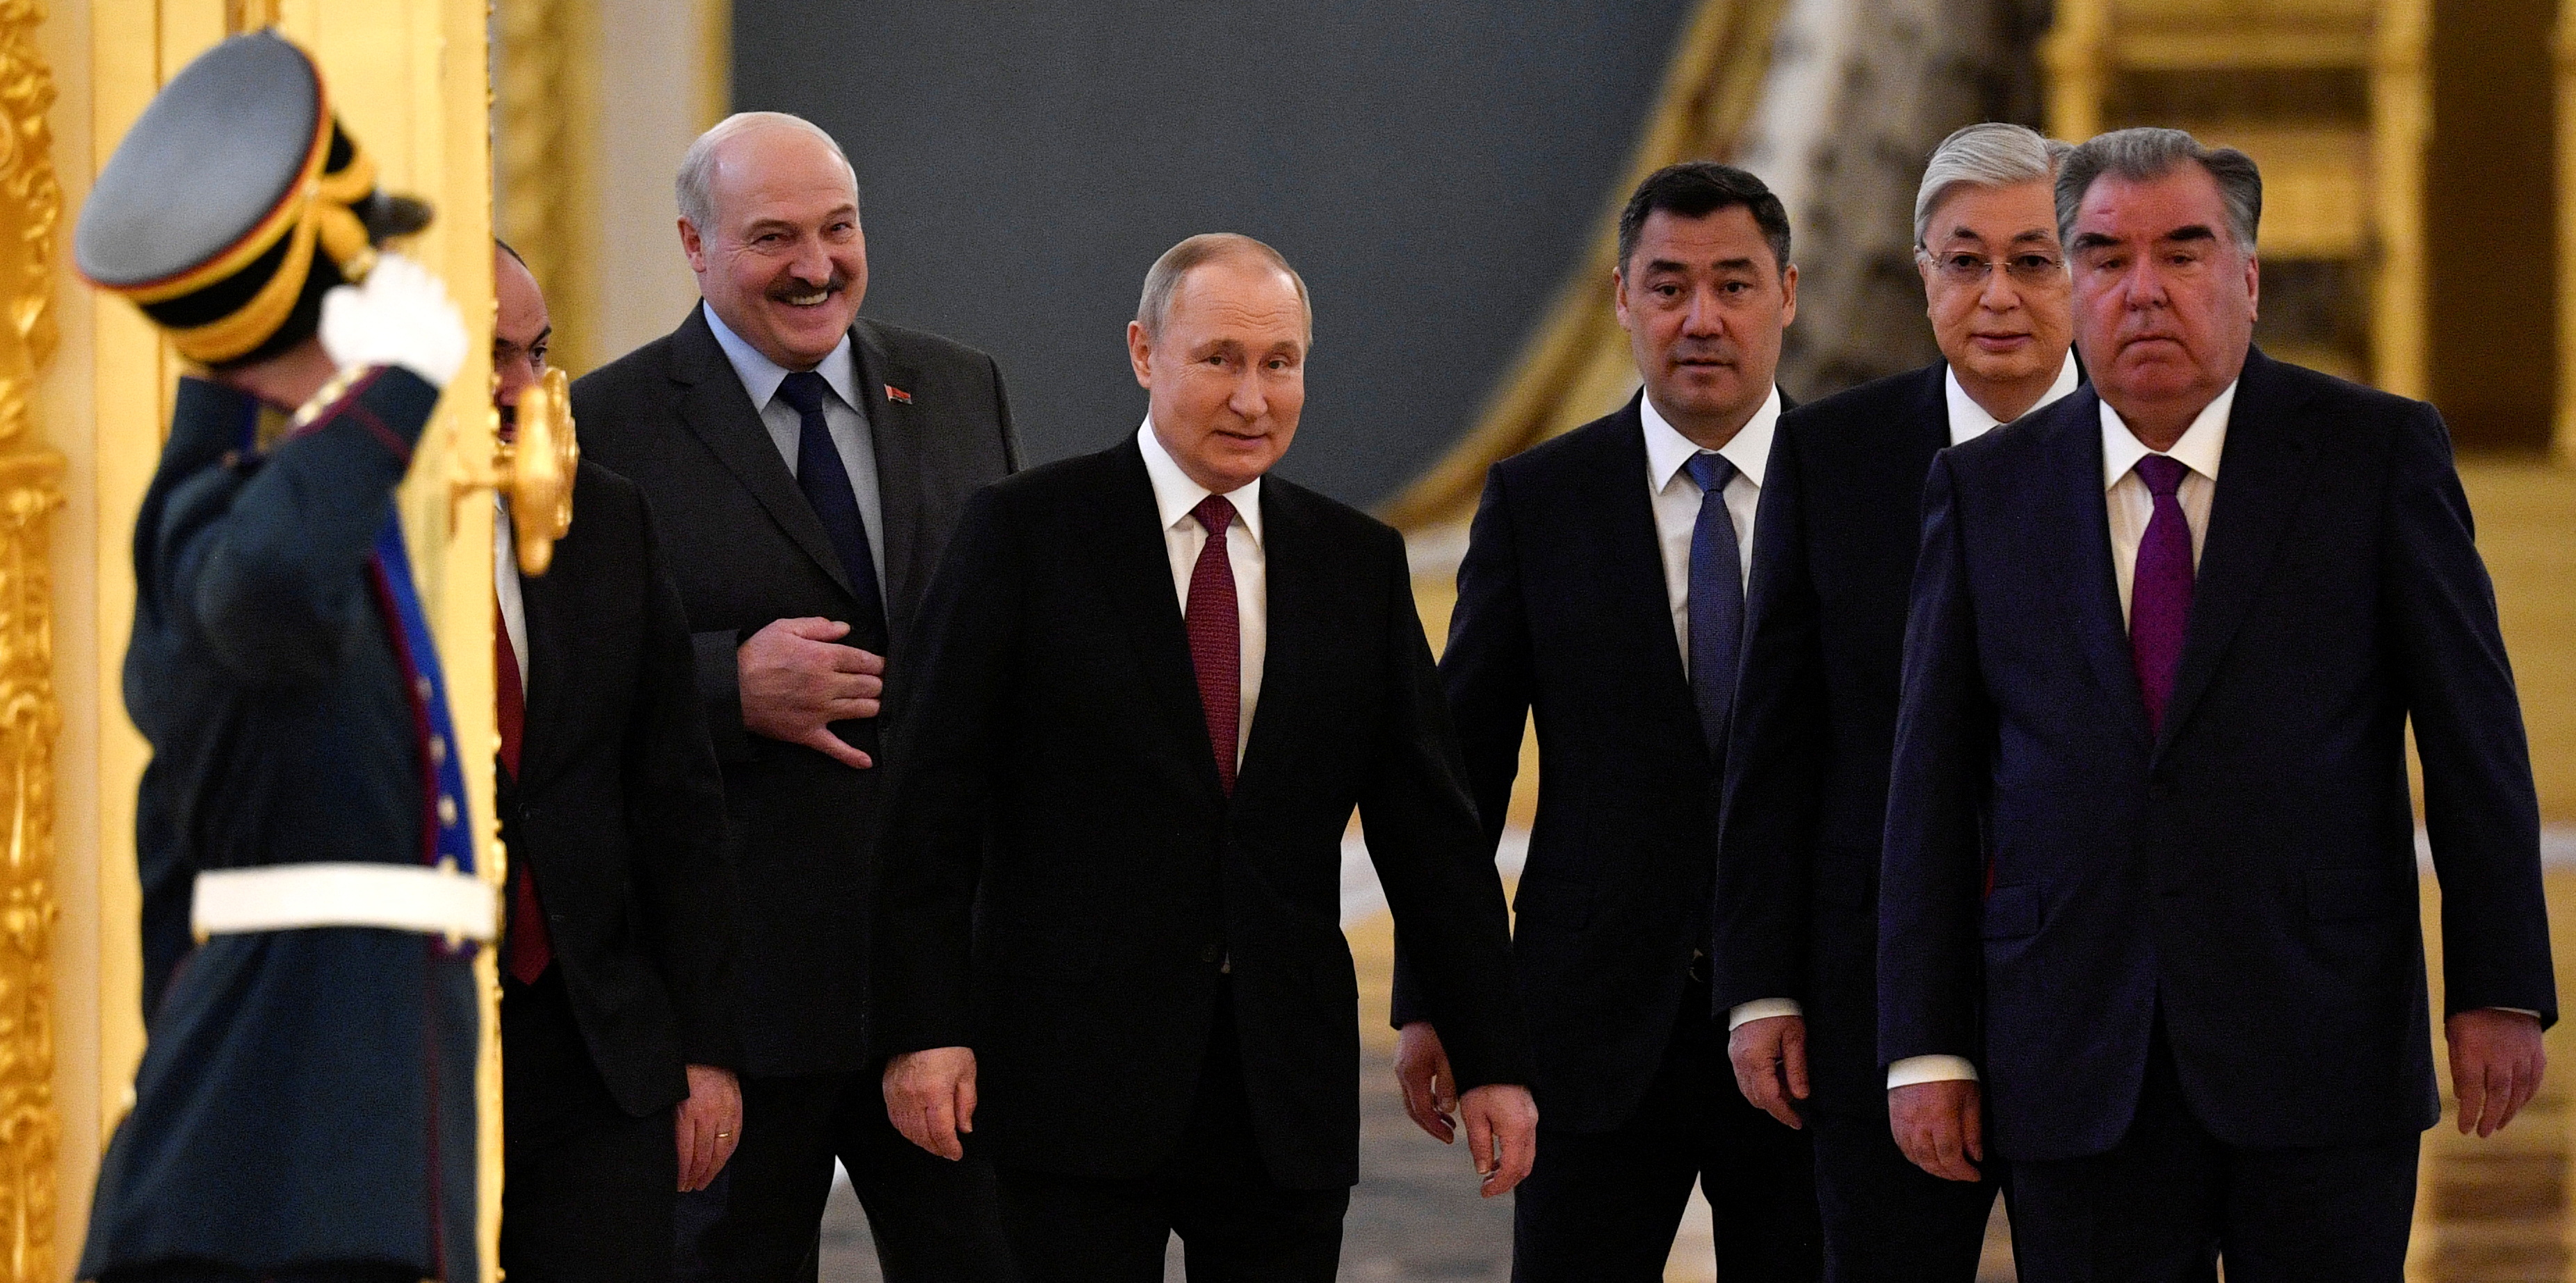 Putin en la reunión de la Organización del Tratado de Seguridad Colectiva. Esta alianza liderada por Moscú agrupa a países de la antigua Unión Soviética e incluye también a Bielorrusia, Armenia, Kazajistán, Kirguistán y Tayikistán (Reuters)

